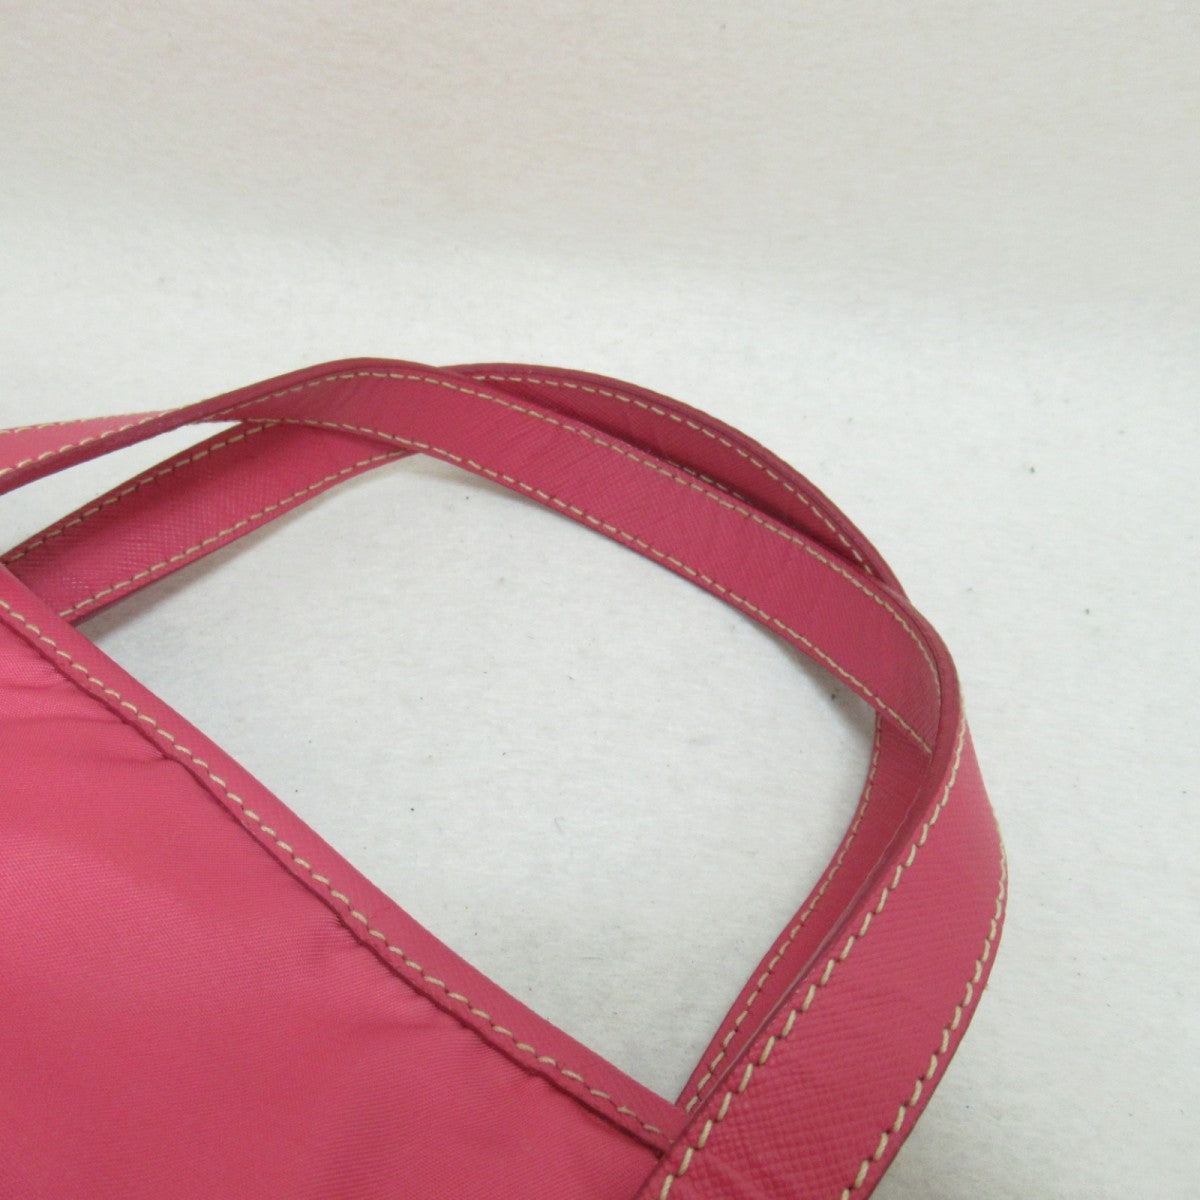 Beijo, Bags, Beijo Breast Cancer Handbag